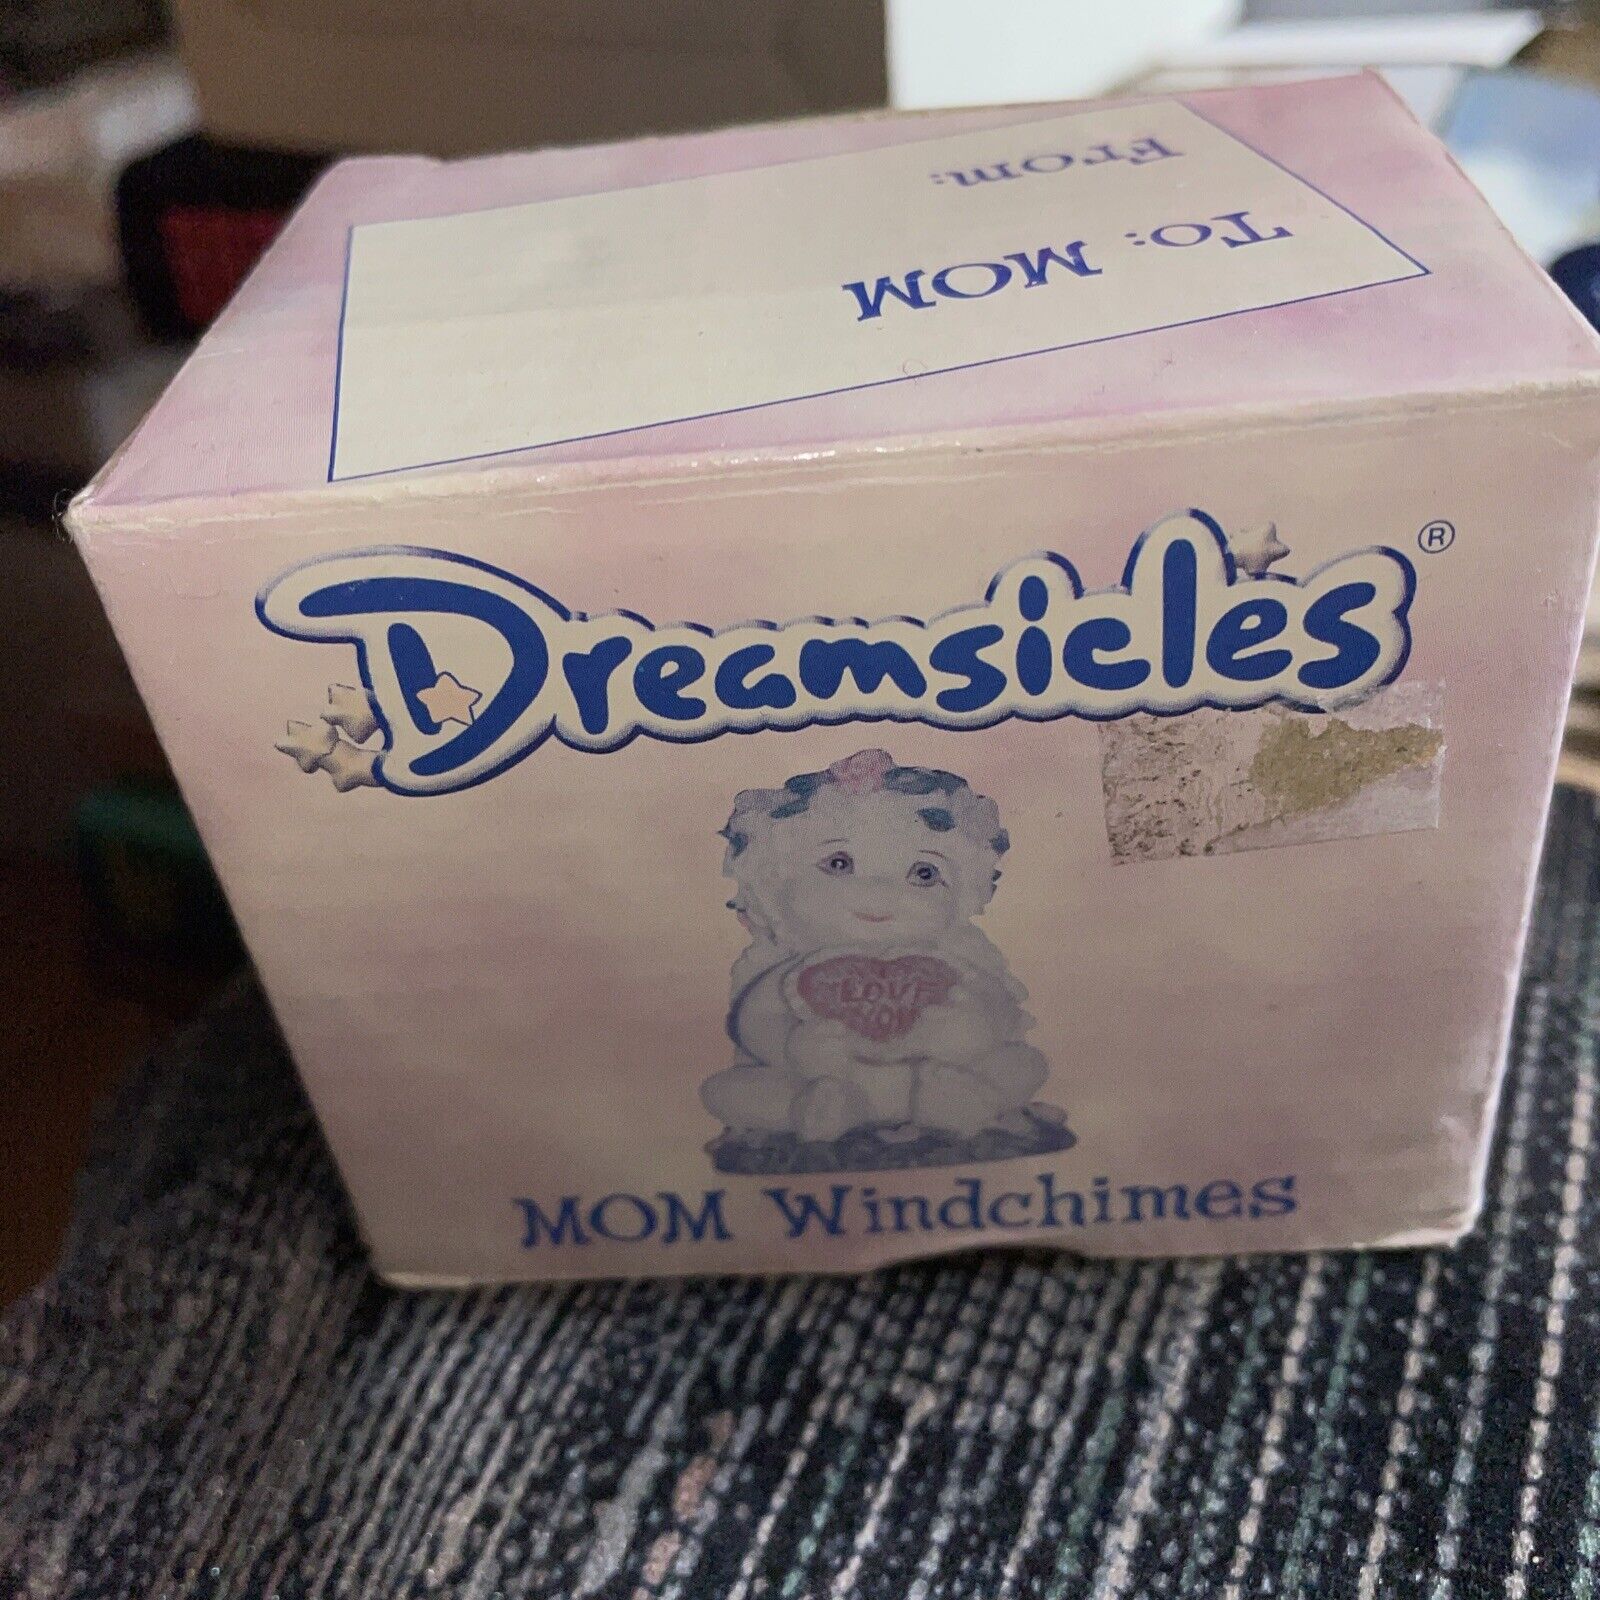 Dreamsicles Angel Cherub Figurine 2005 MOM Windchime #5701 NEW IN BOX